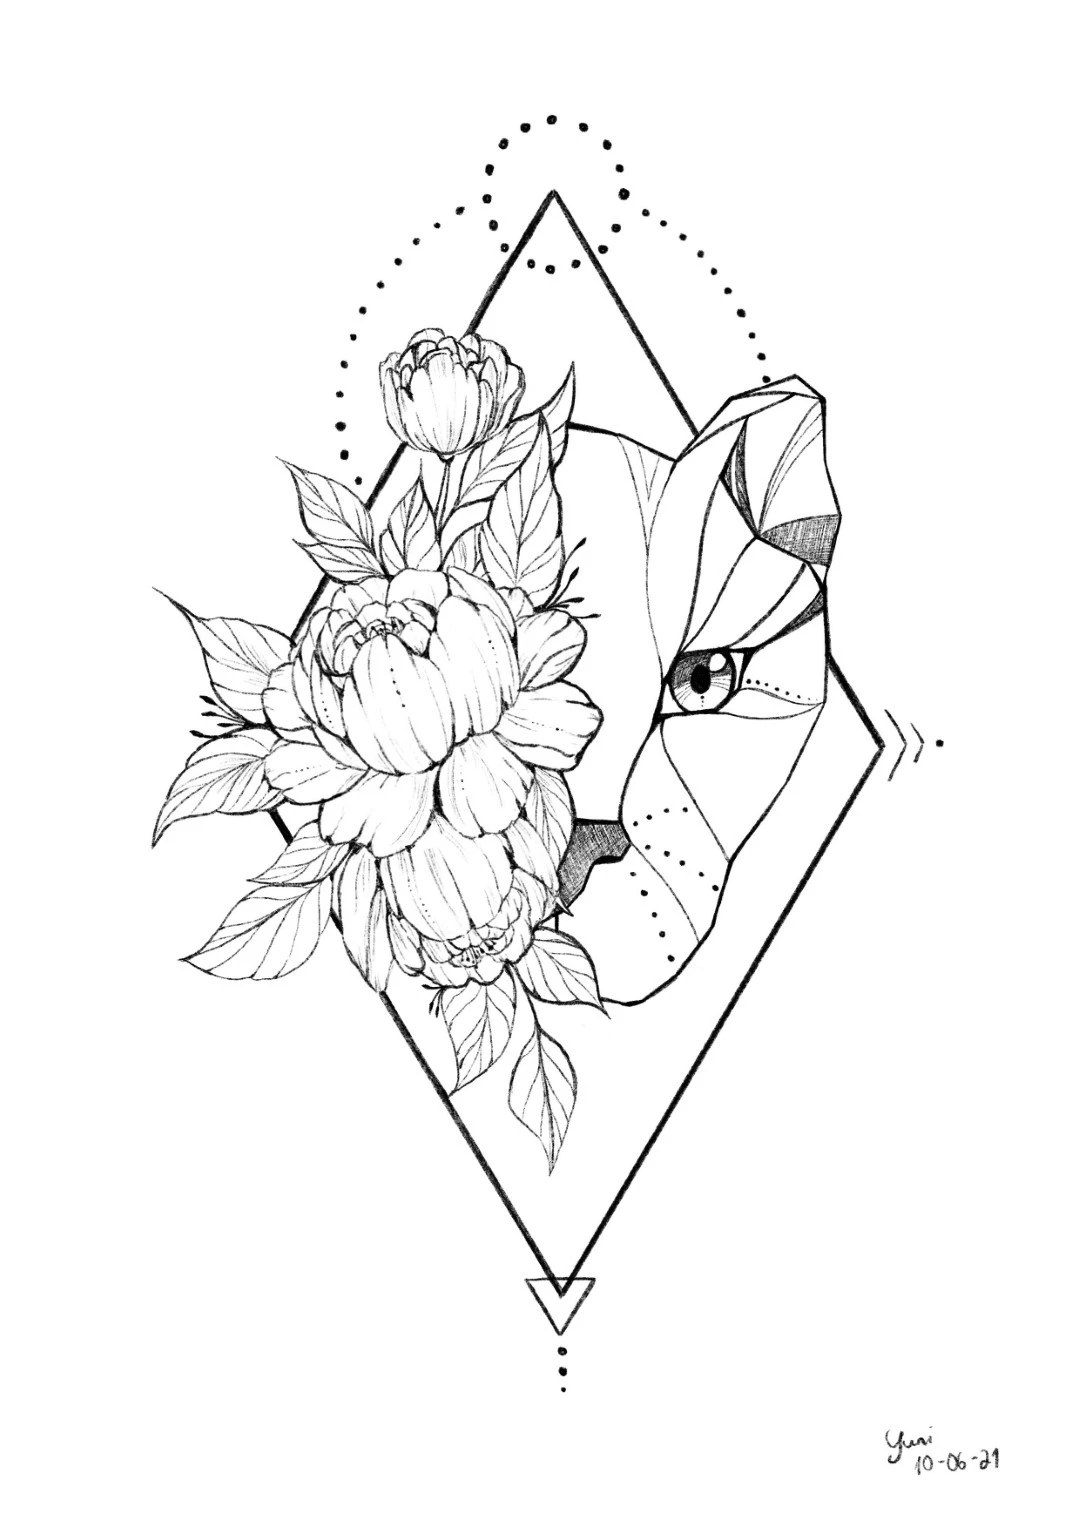 Tattoo Design Idea Geometric Lion with Roses